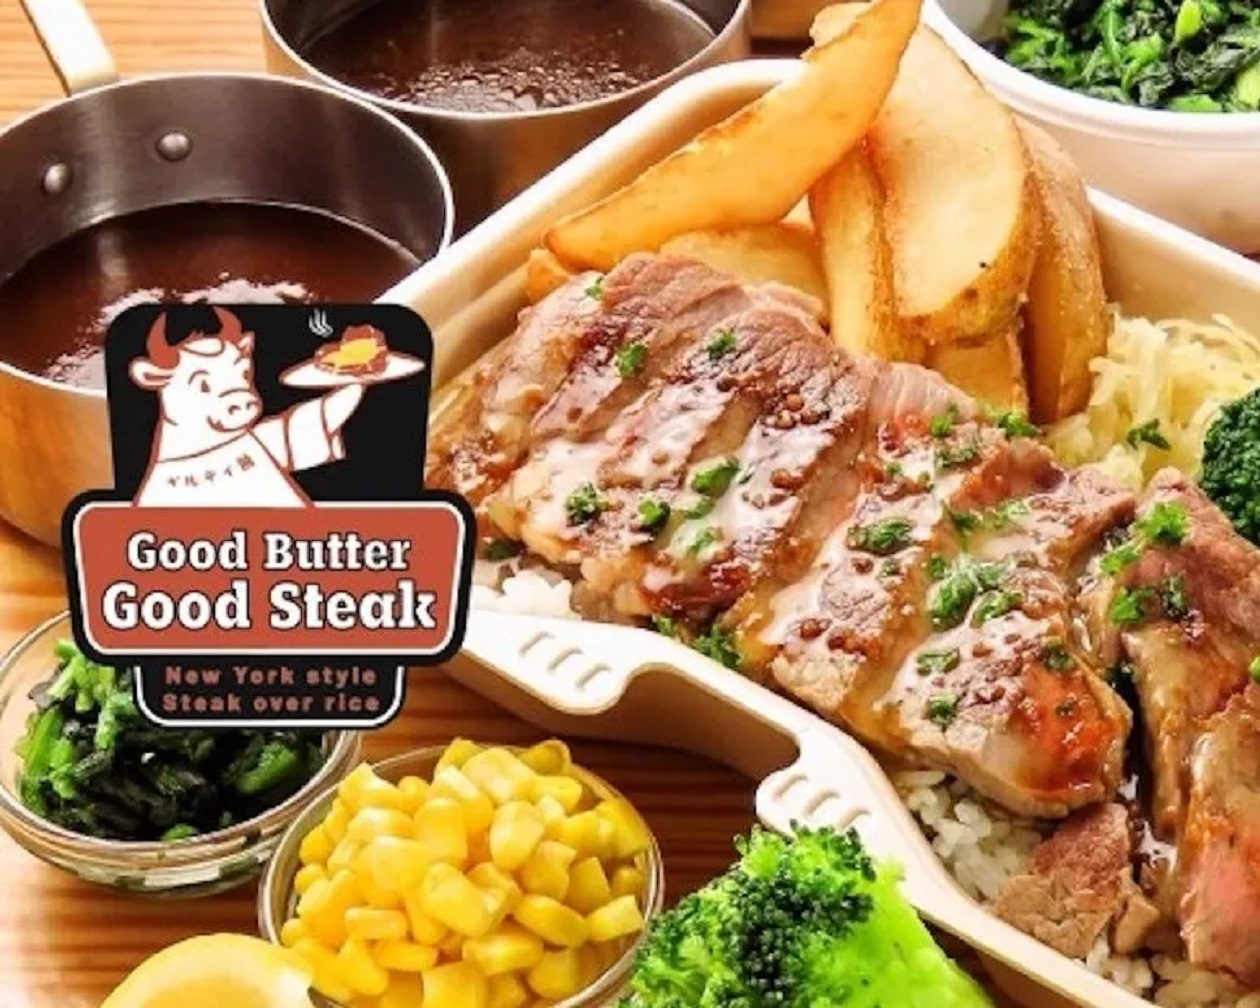 グッドバターグッドステーキ Good Butter Good Steak – New York style Steak over rice - ARM’S Delistation「アームスデリステーション」